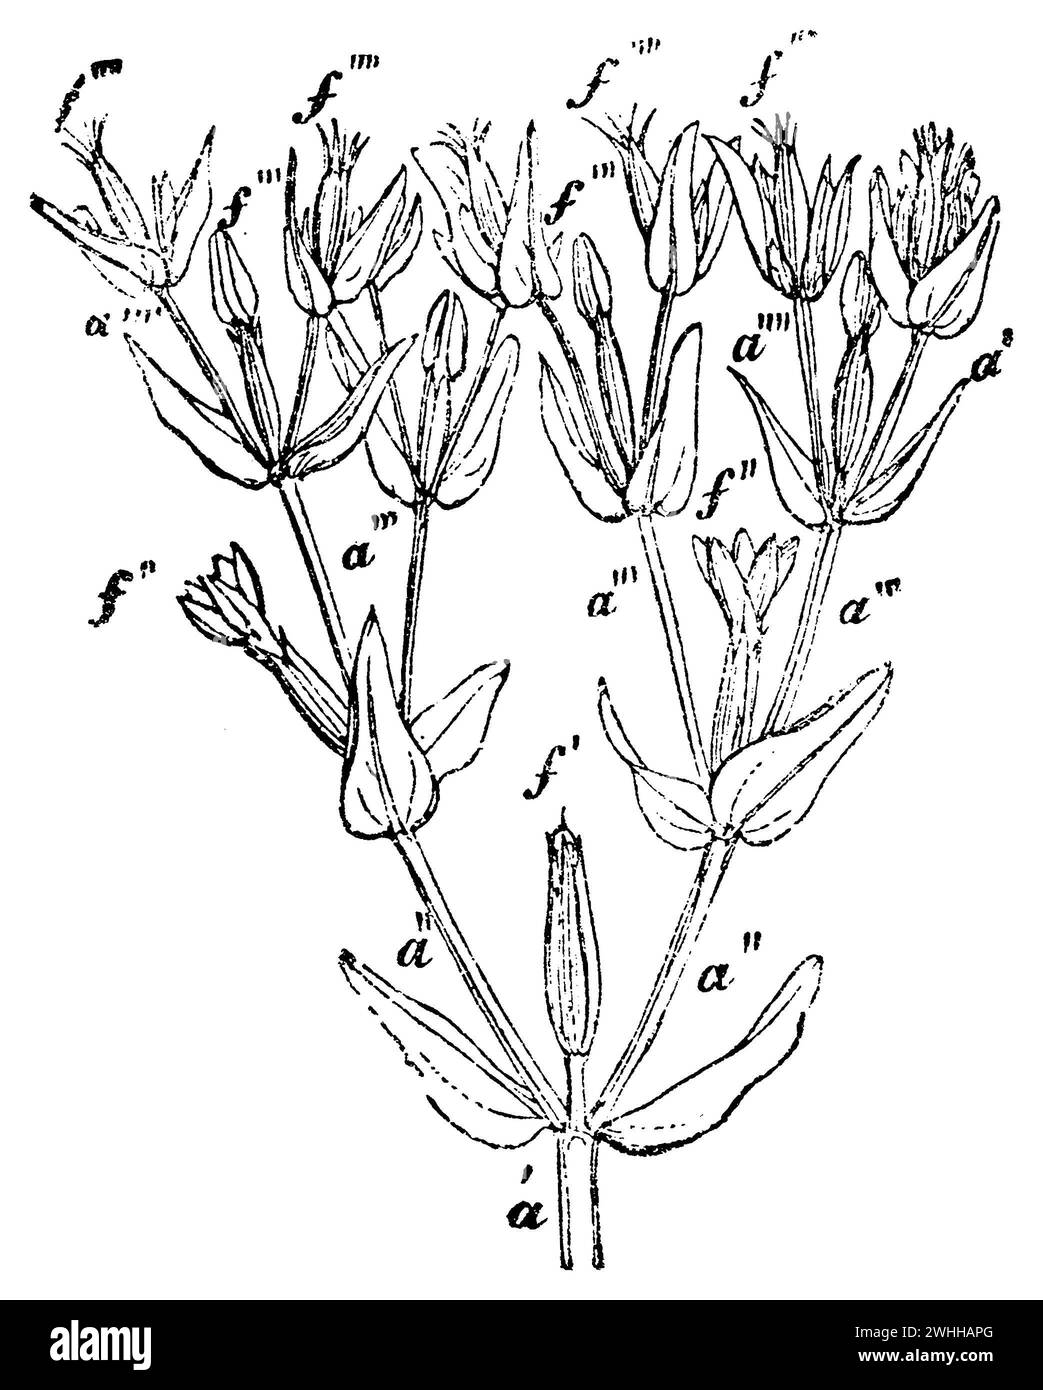 Centaury, Centaurium erythraea, anonym (biology book, 1881), Tausendgüldenkraut, Spitze des Strauches: a Primäre Achse, a'' sekundäre Achsen, insgesamt zwei, a''' tertiäre Achsen, insgesamt vier, a'''' quaternäre Achsen, insgesamt acht, f Blüten; es sind nur diejenigen bezeichnet, welche jede der verschiedenen vorhergehenden Achsen mit dem entsprechen Zeichen beenden. Die Blüte ist um so entwickelter, je mehr sie einer Achse einer höhern Ordnung angehören; f' im Zustande der Frucht, f'' entfaltet, f''' in Knospen, érythrée Stock Photo